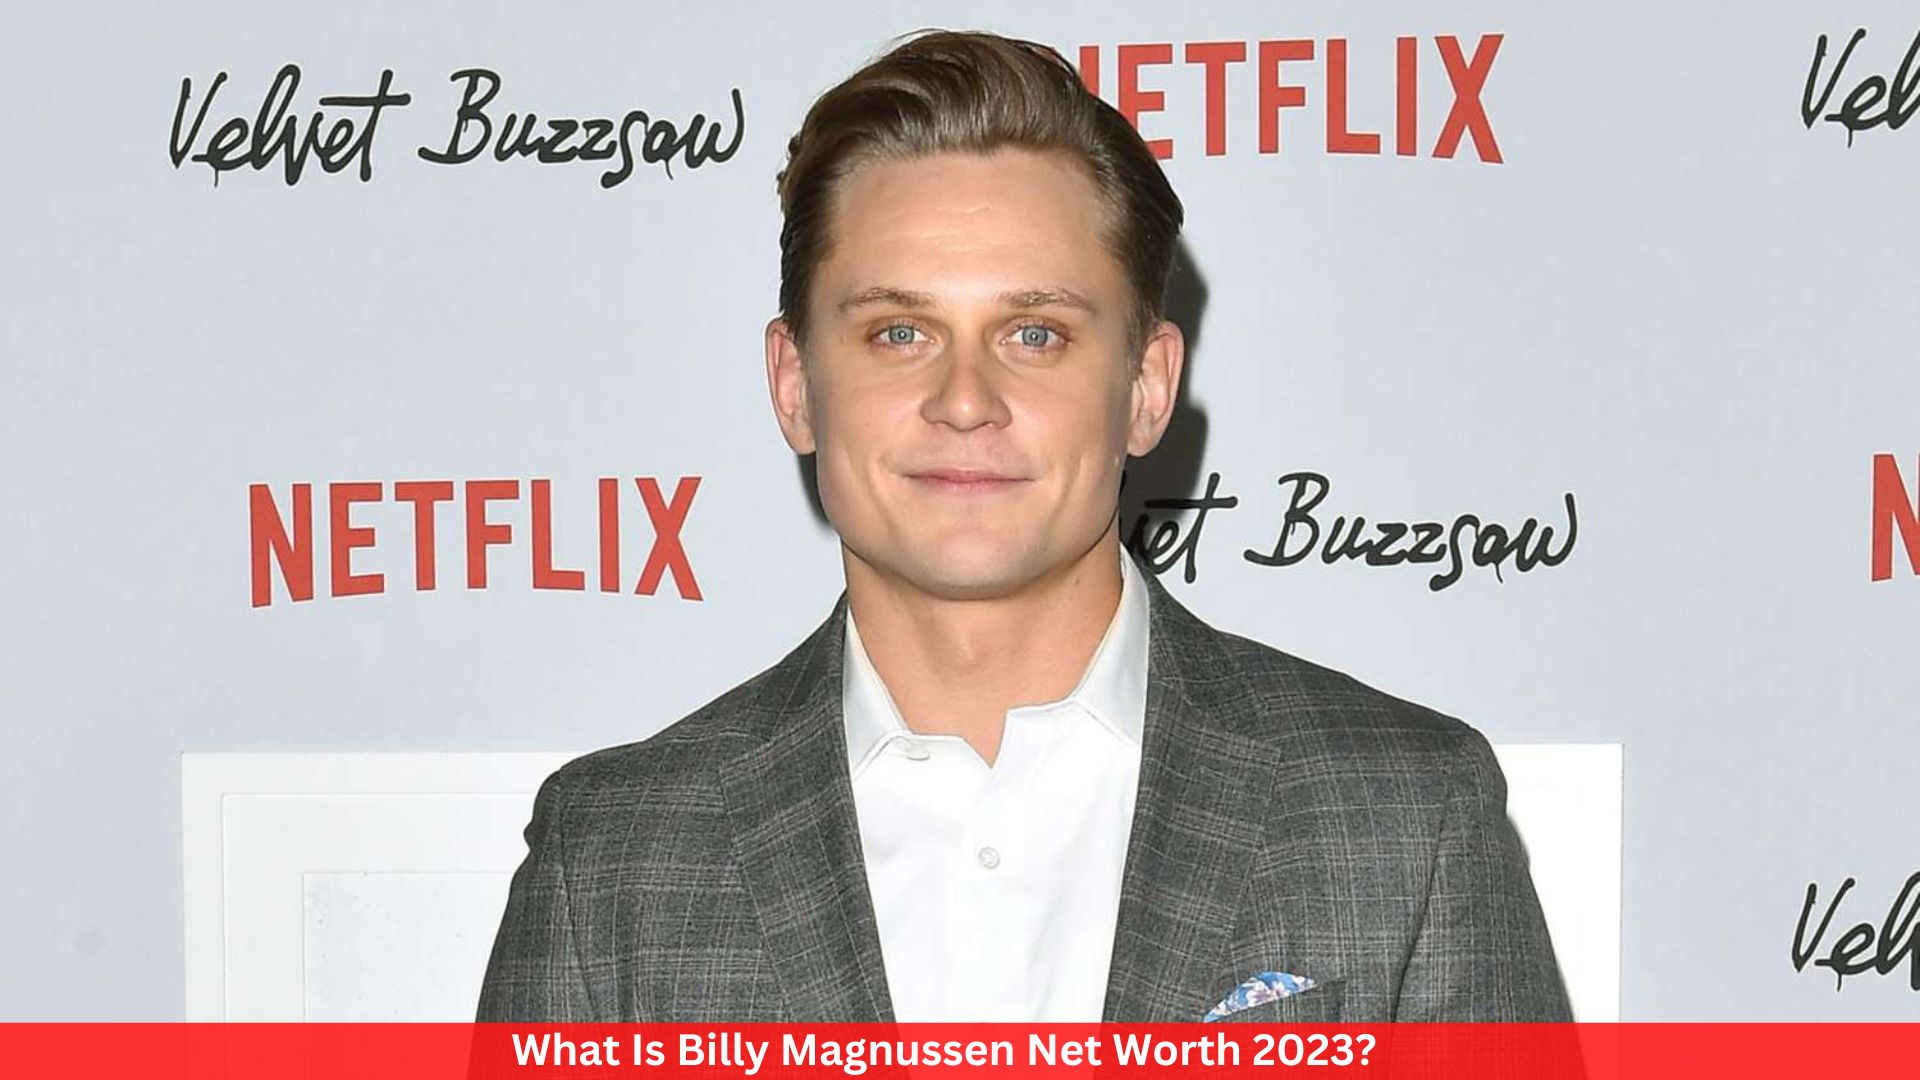 What Is Billy Magnussen Net Worth 2023?